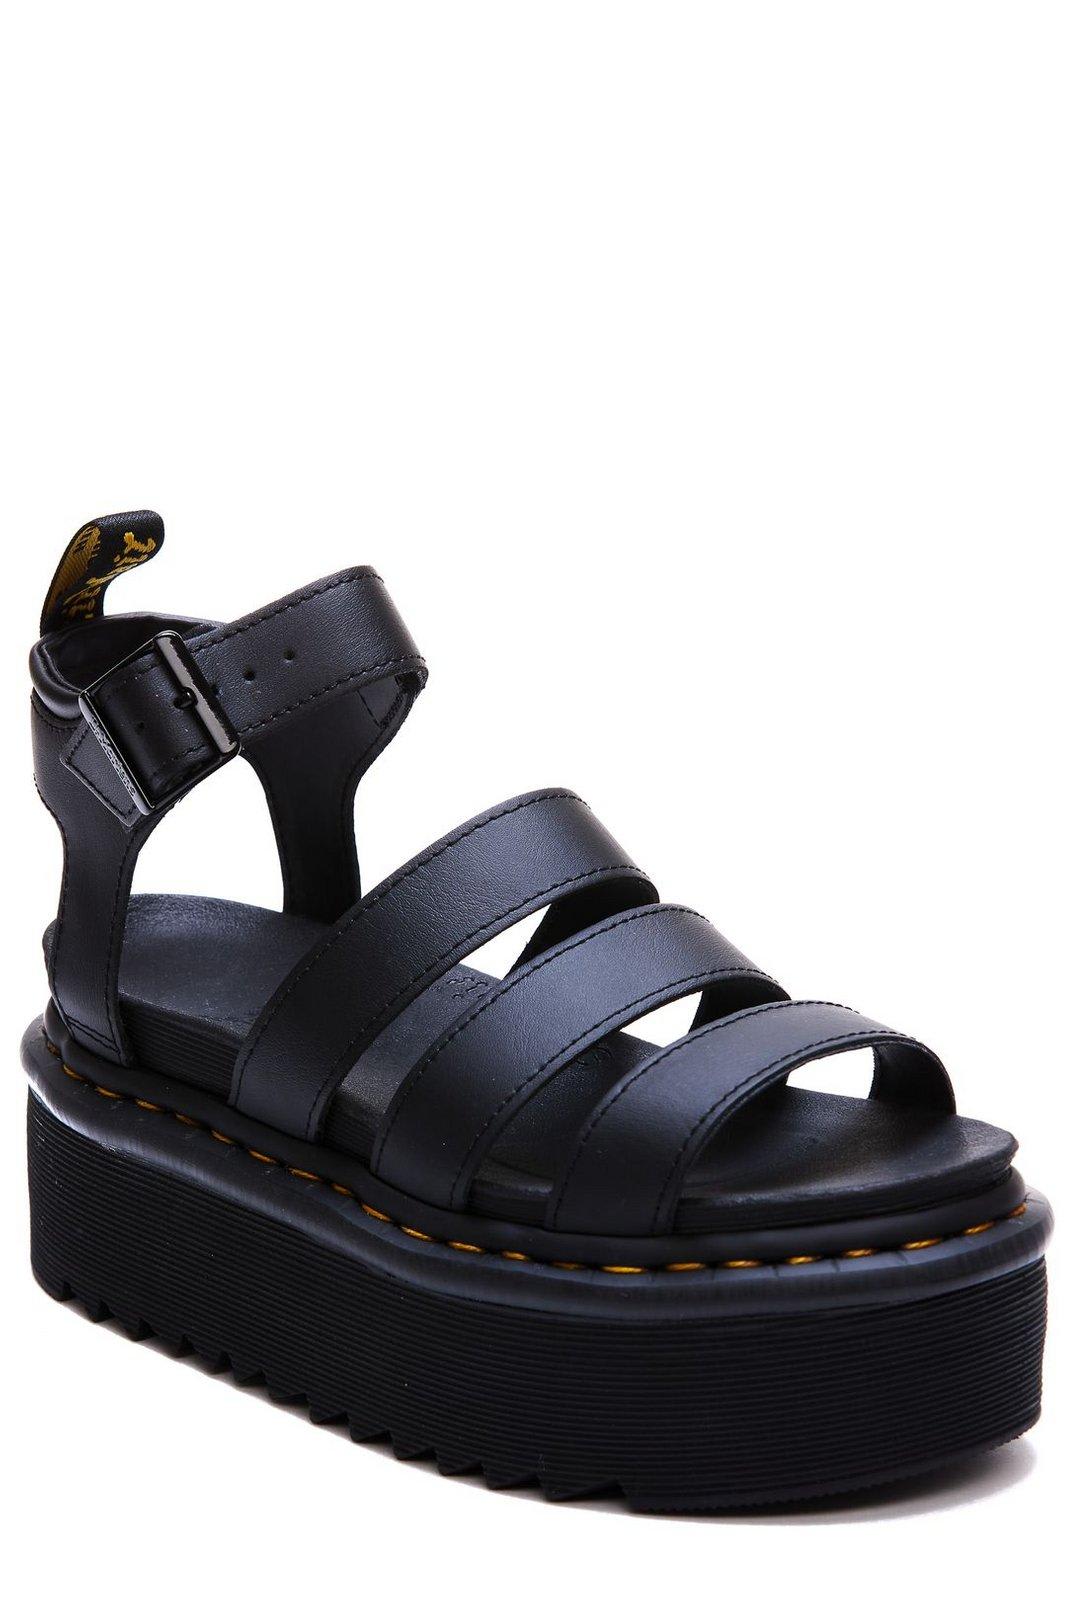 Shop Dr. Martens' Blaire Quad Hydro Open Toe Sandals